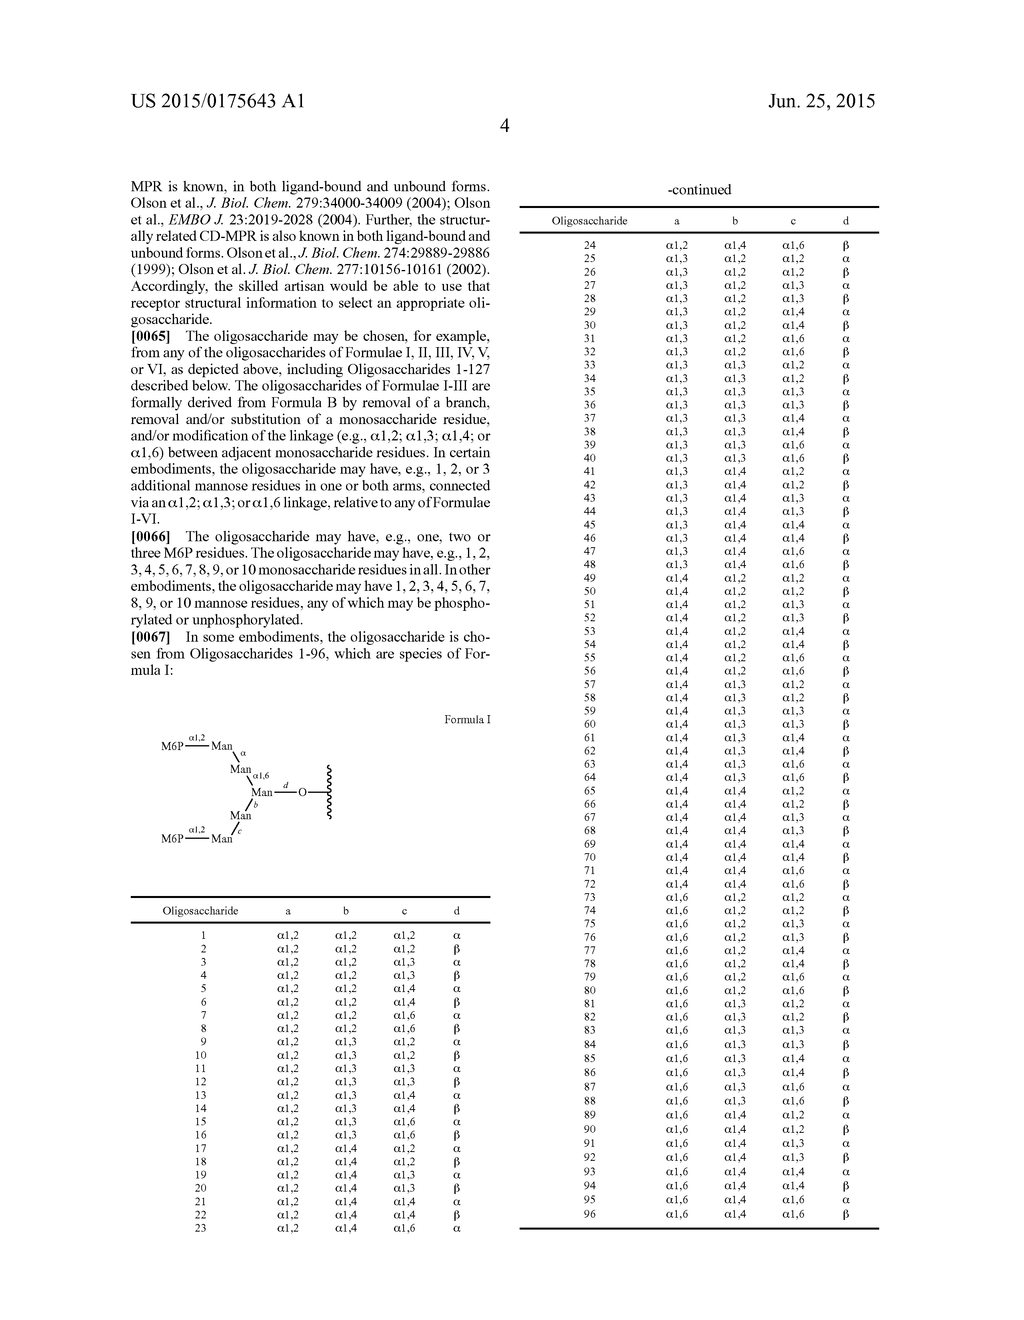 OLIGOSACCHARIDE-PROTEIN CONJUGATES - diagram, schematic, and image 47